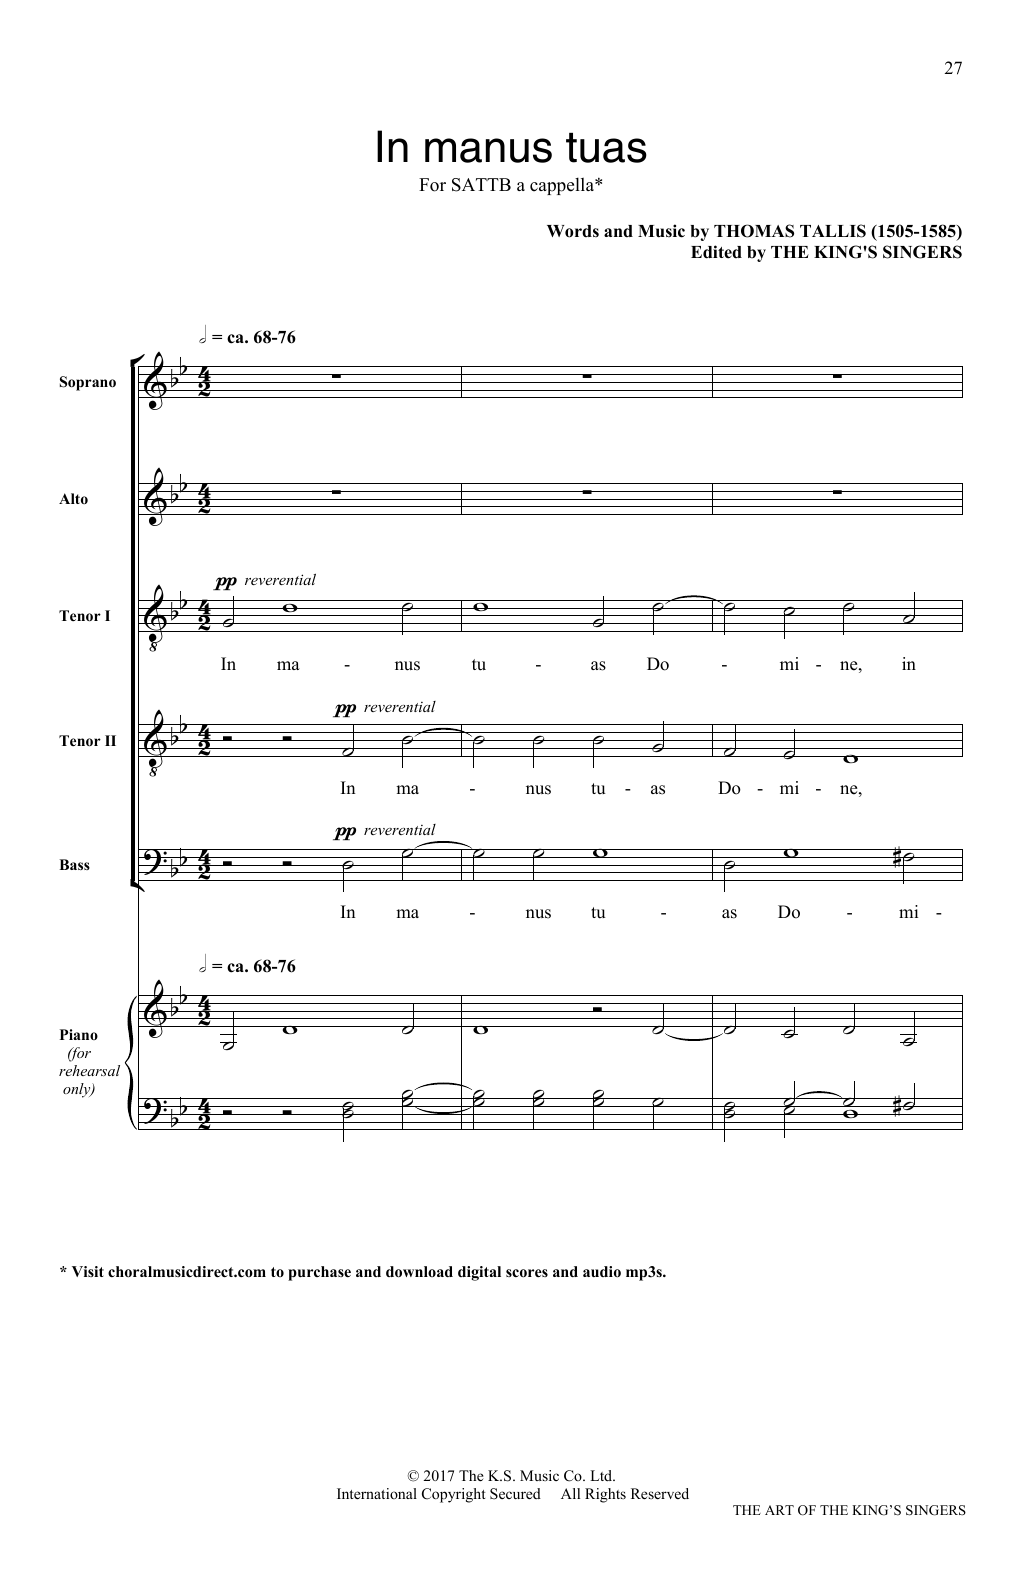 Thomas Tallis In Manus Tuas Sheet Music Notes & Chords for SATB - Download or Print PDF